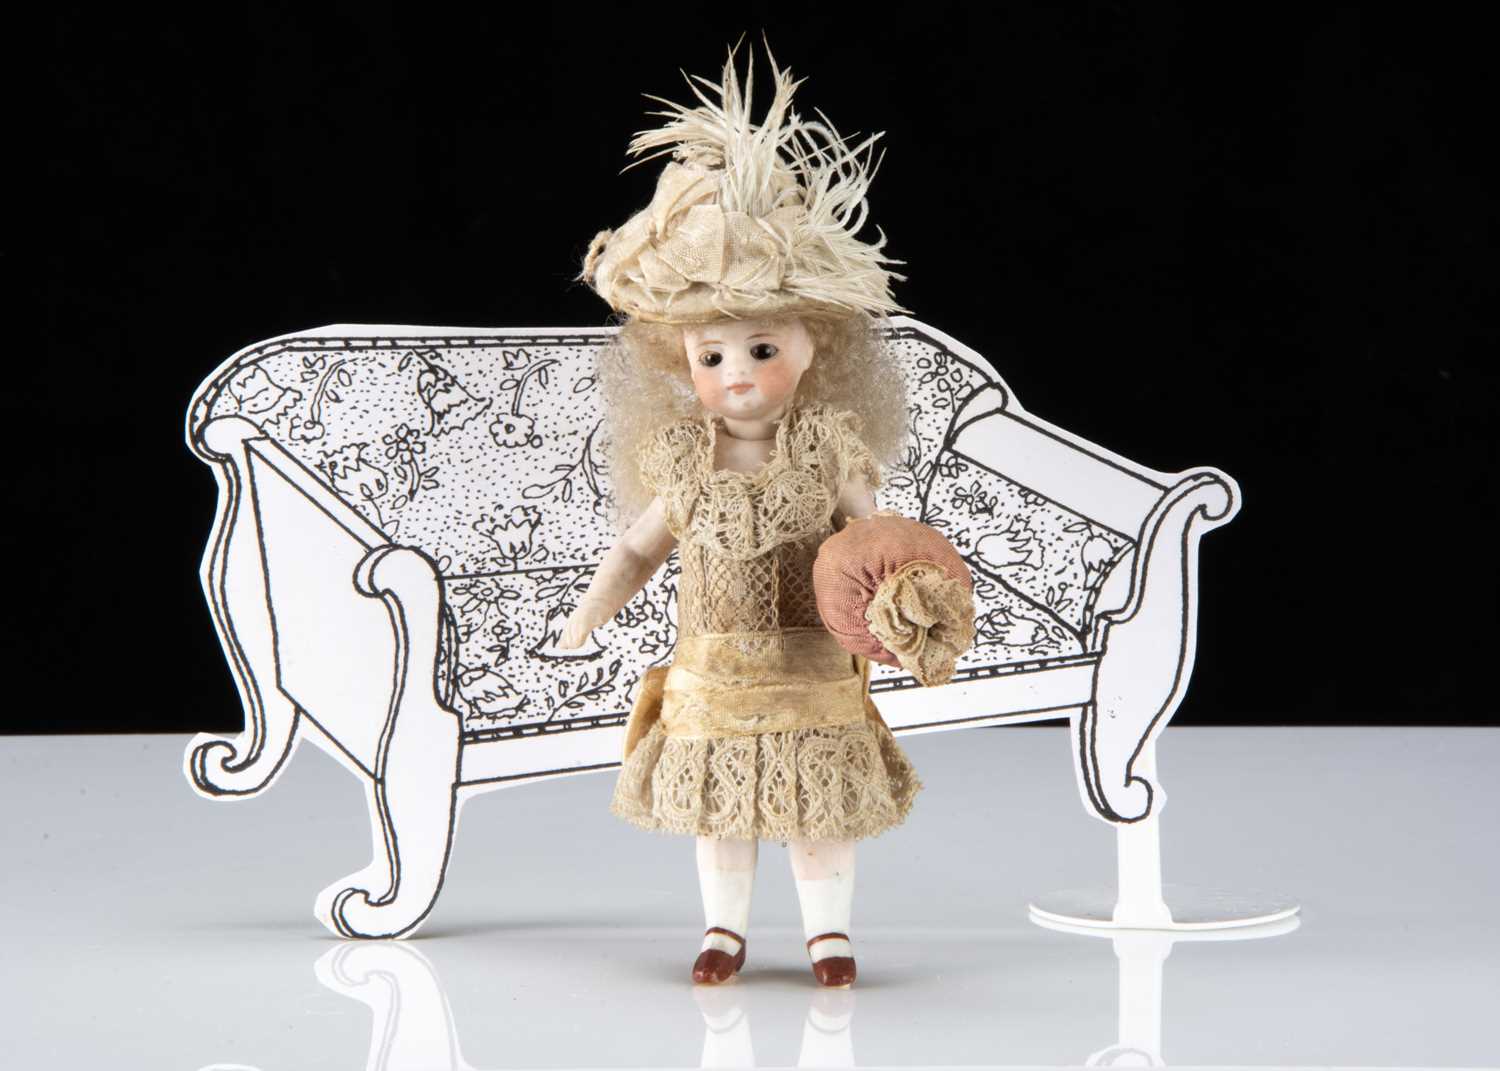 A fine Simon & Halbig Mignonette all-bisque swivel head dolls’ house doll,